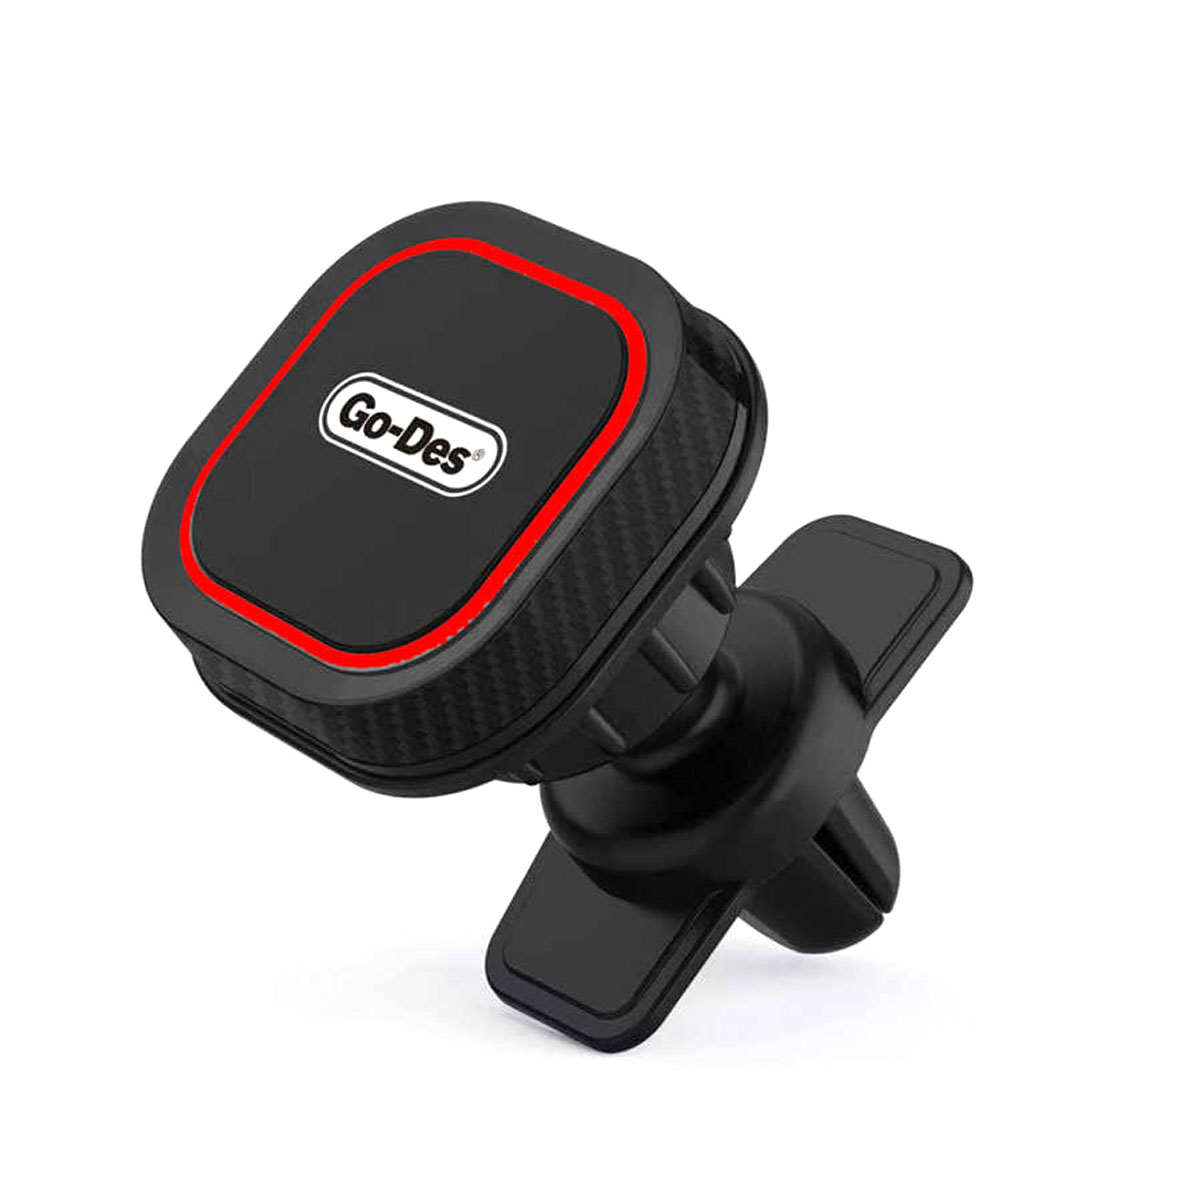 Автомобильный магнитный держатель GO-DES GD-HD667 для смартфона, цвет черный